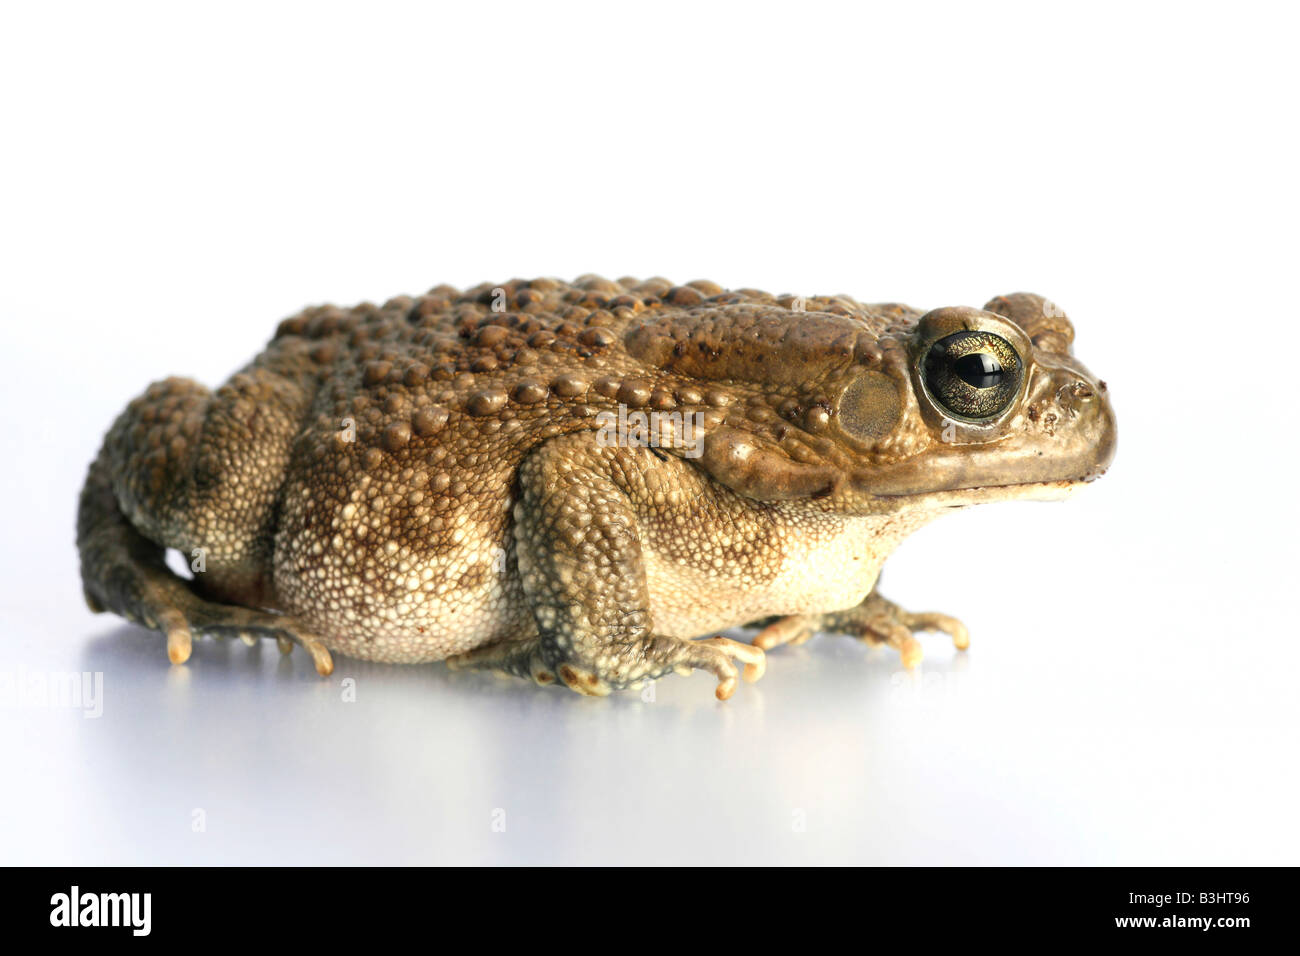 Bufo regularis, panther toad Stock Photo